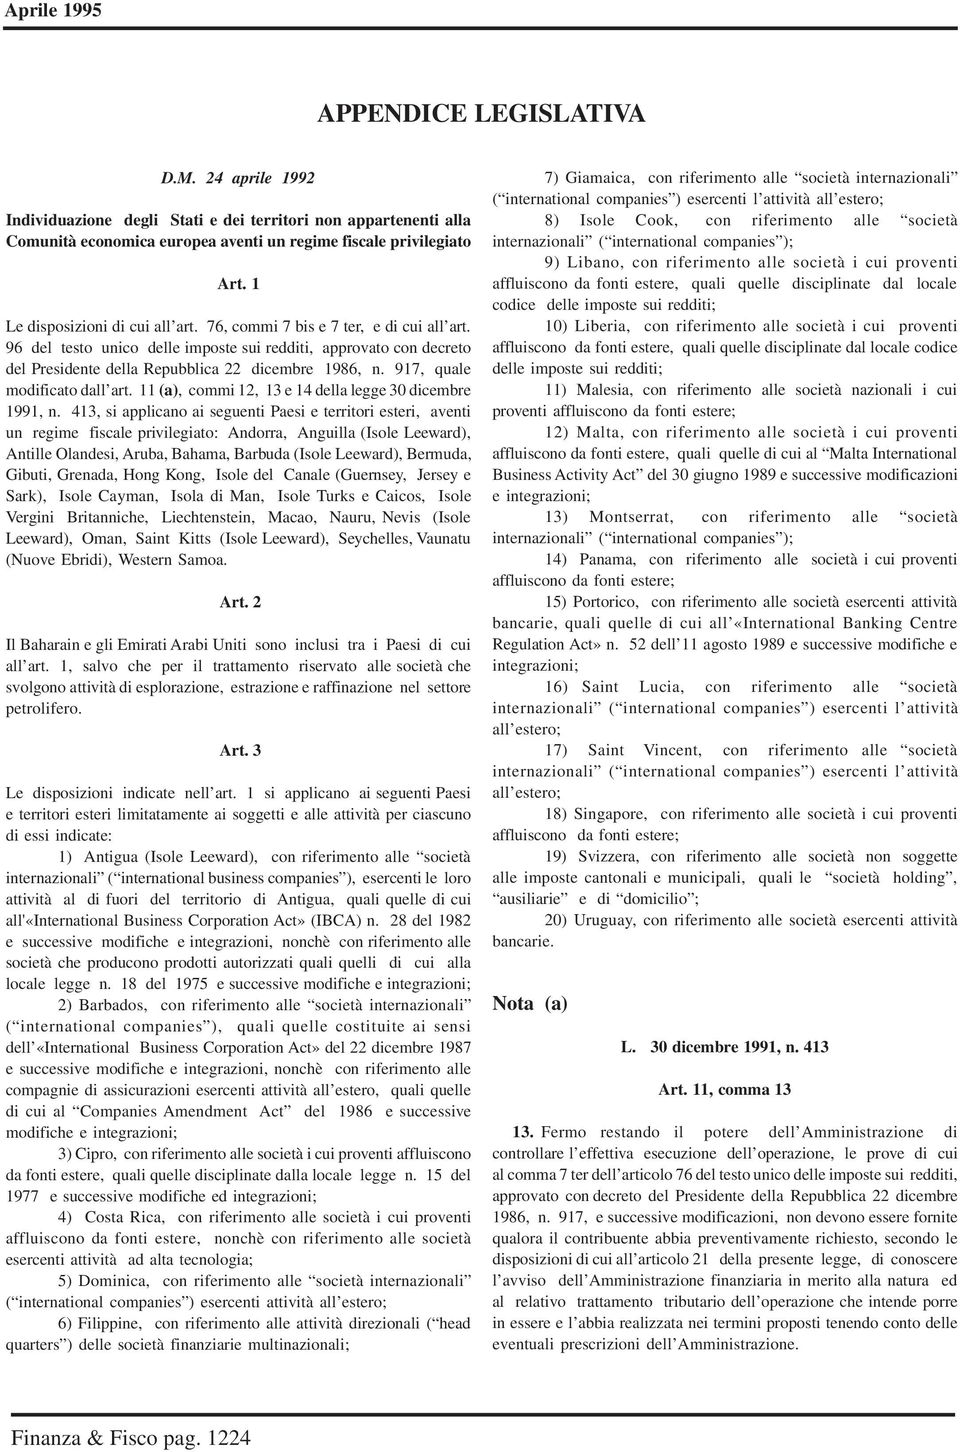 917, quale modificato dall art. 11 (a), commi 12, 13 e 14 della legge 30 dicembre 1991, n.